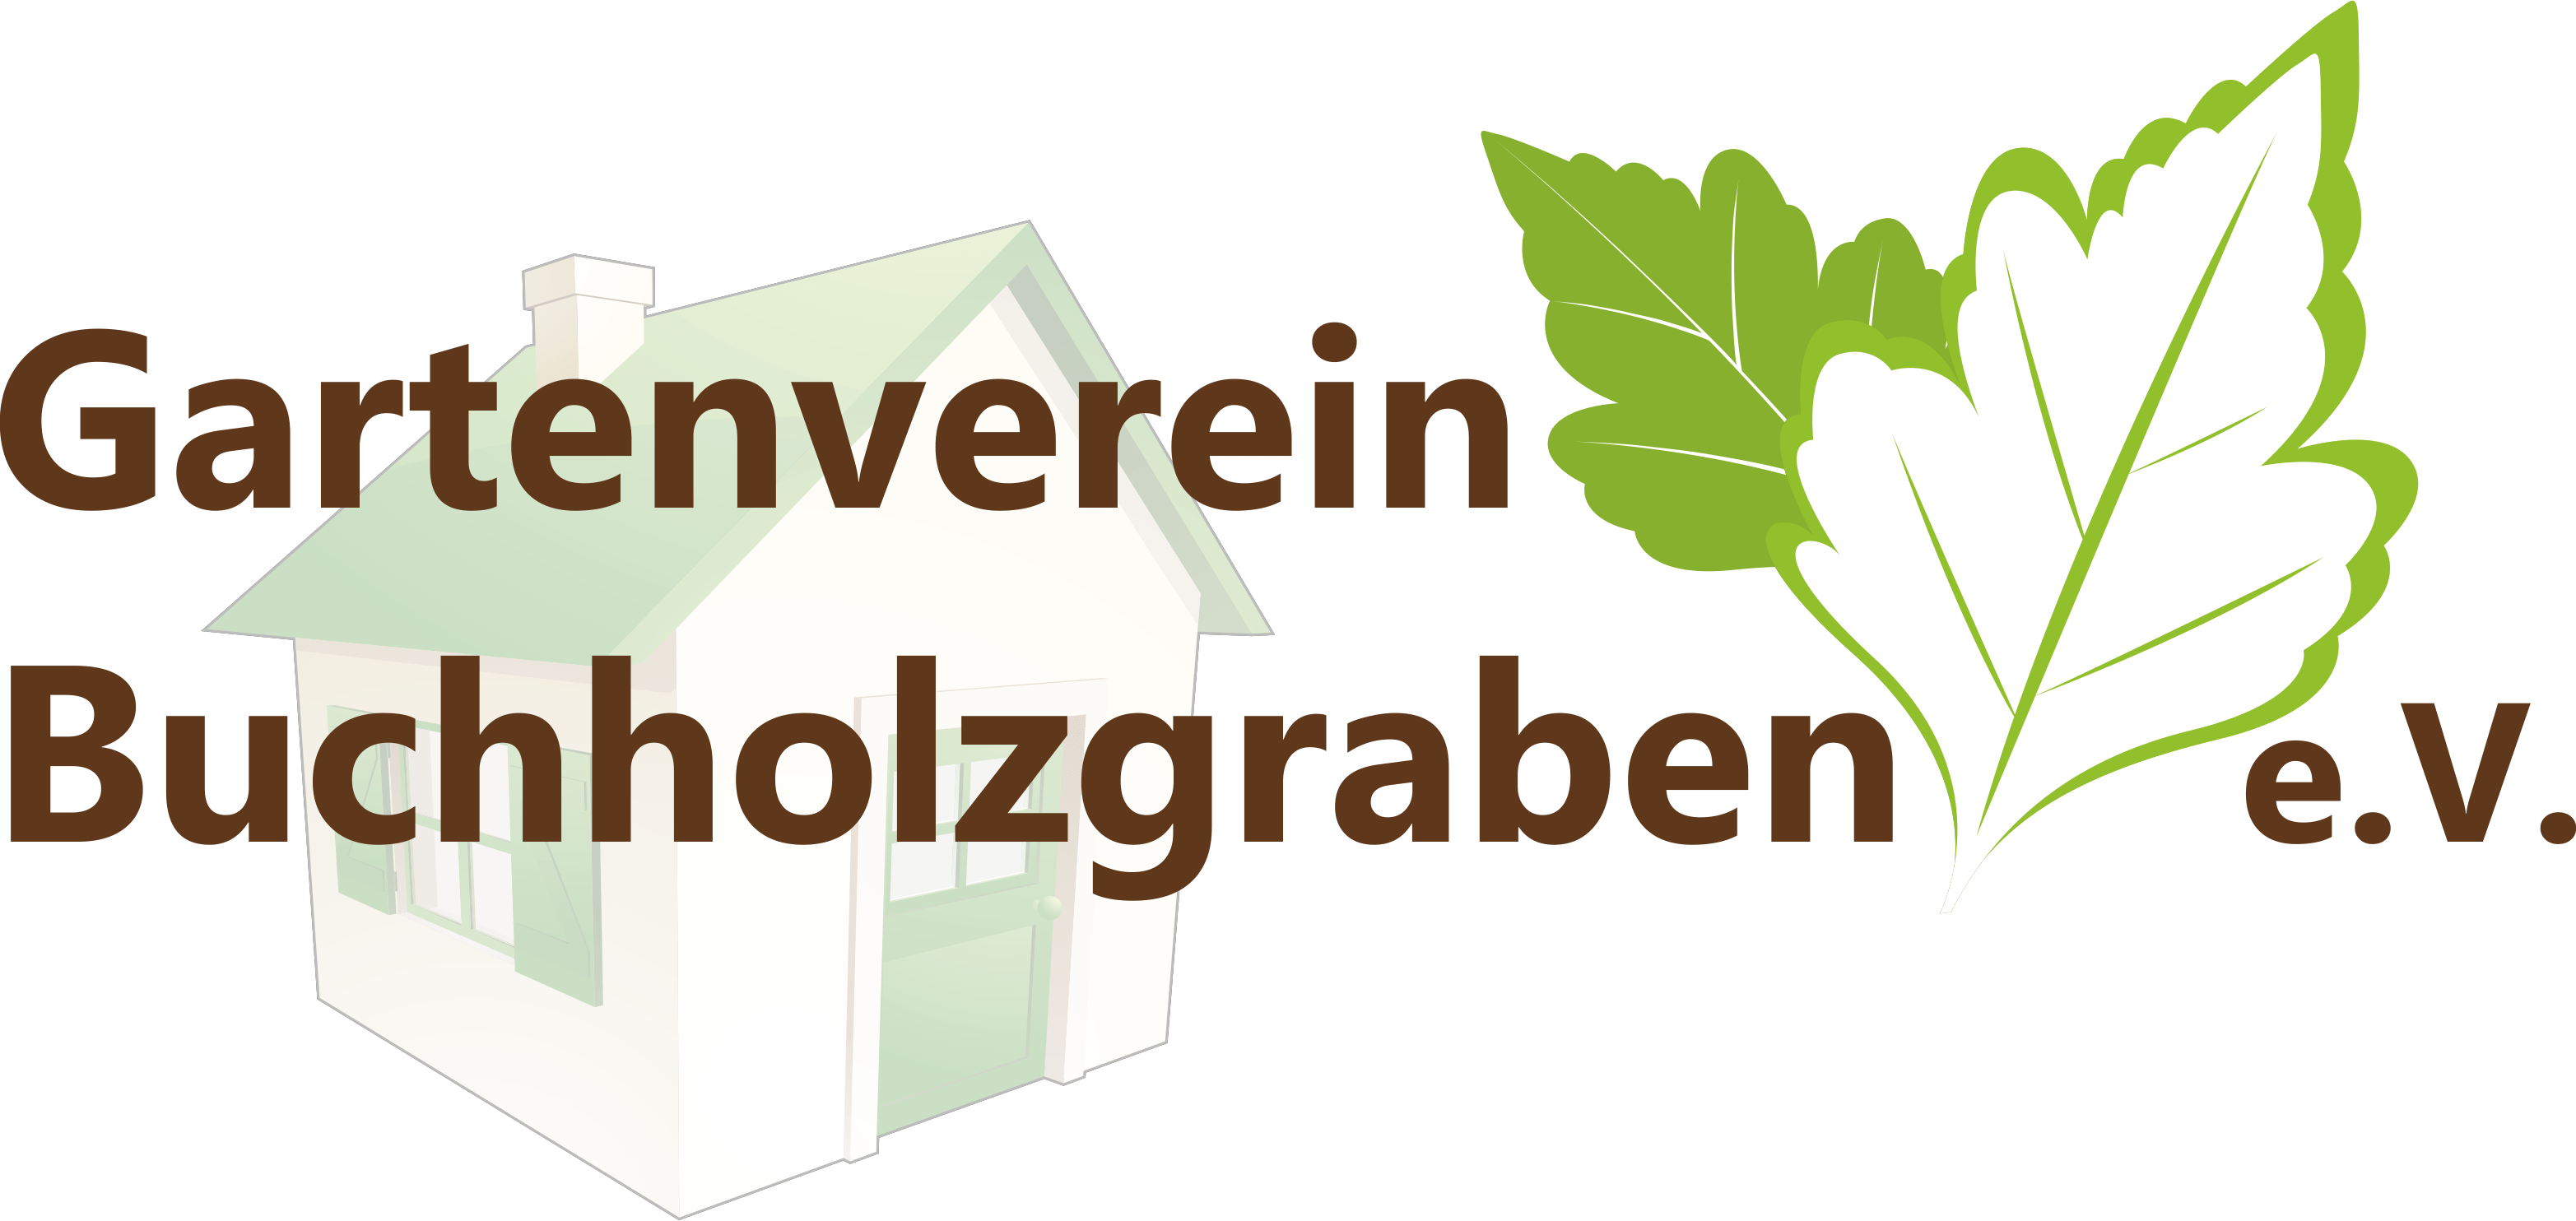 Gartenverein Buchholzgraben Naumburg